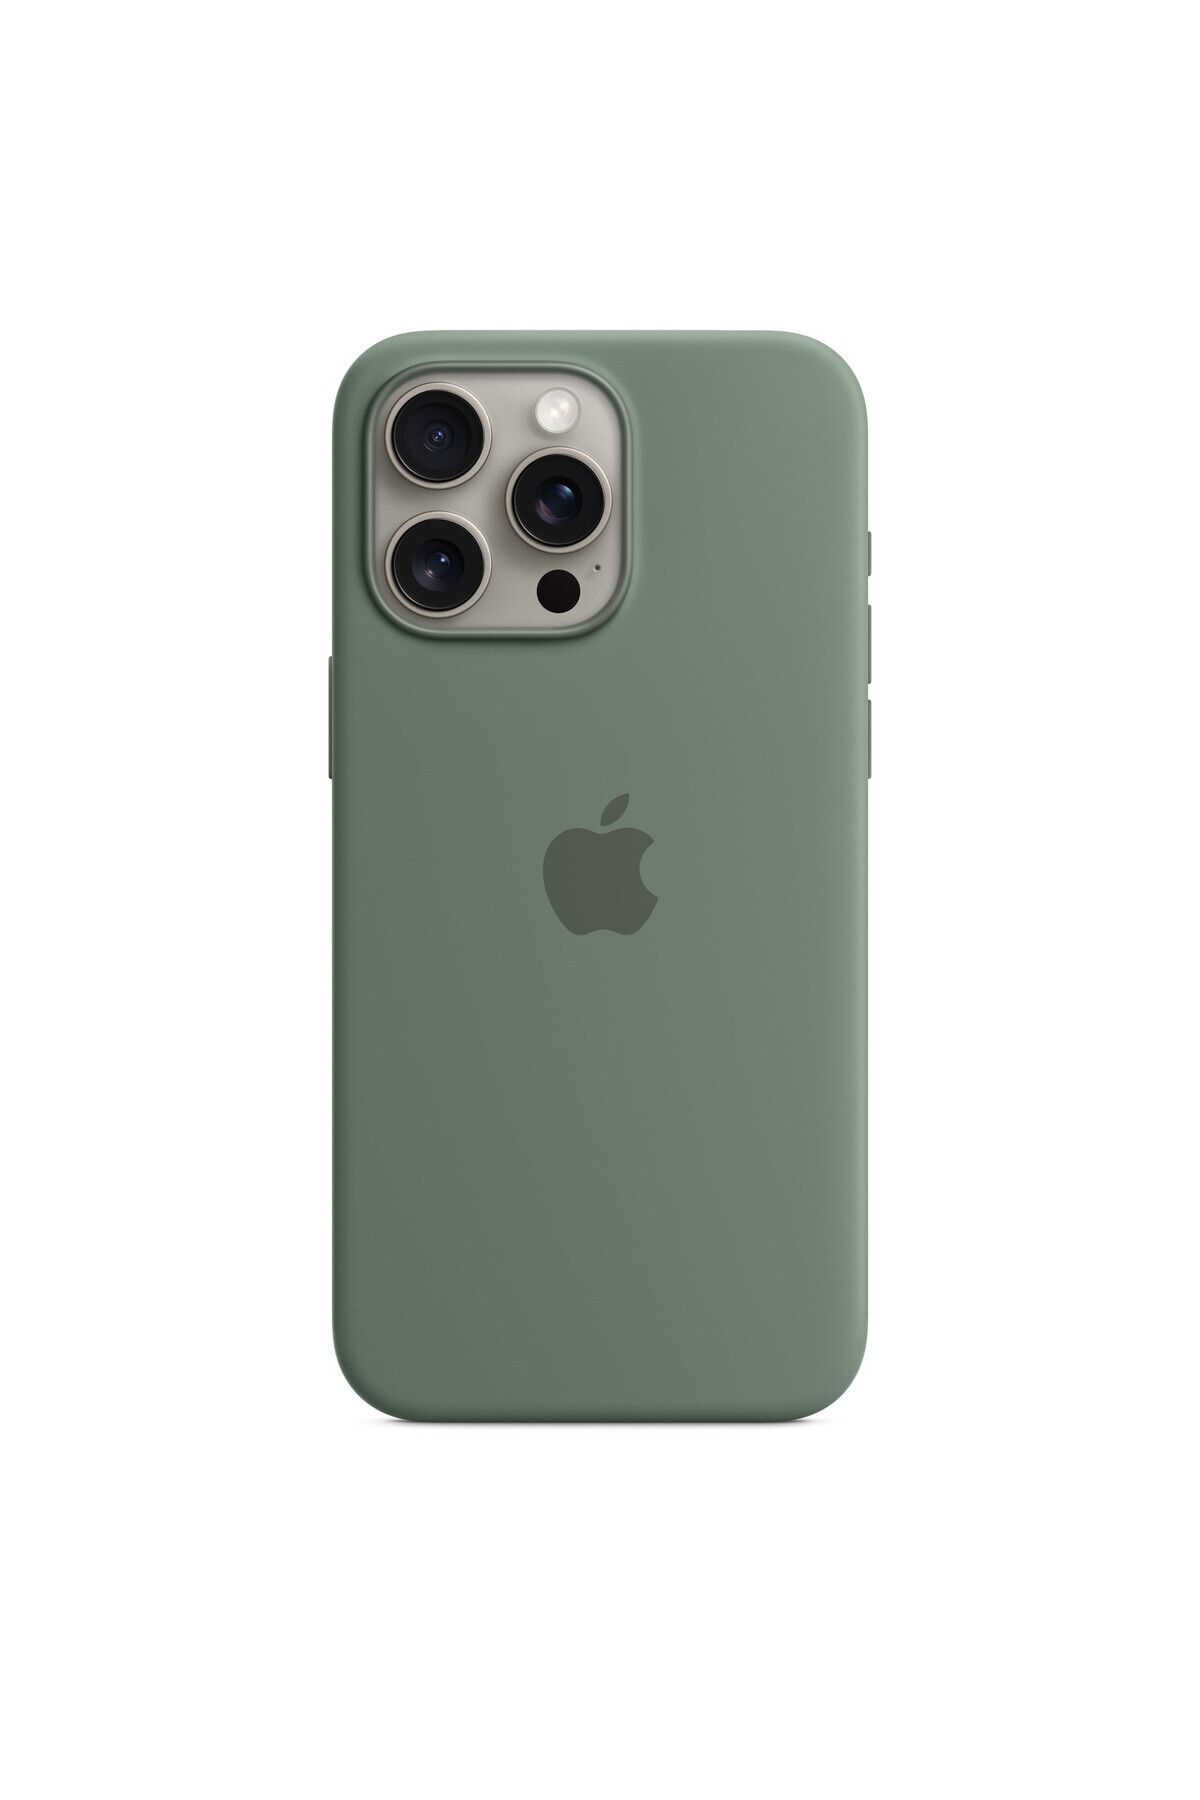 Apple iPhone 15 Pro Max için MagSafe özellikli Silikon Kılıf - Selvi Mt1x3zm/a